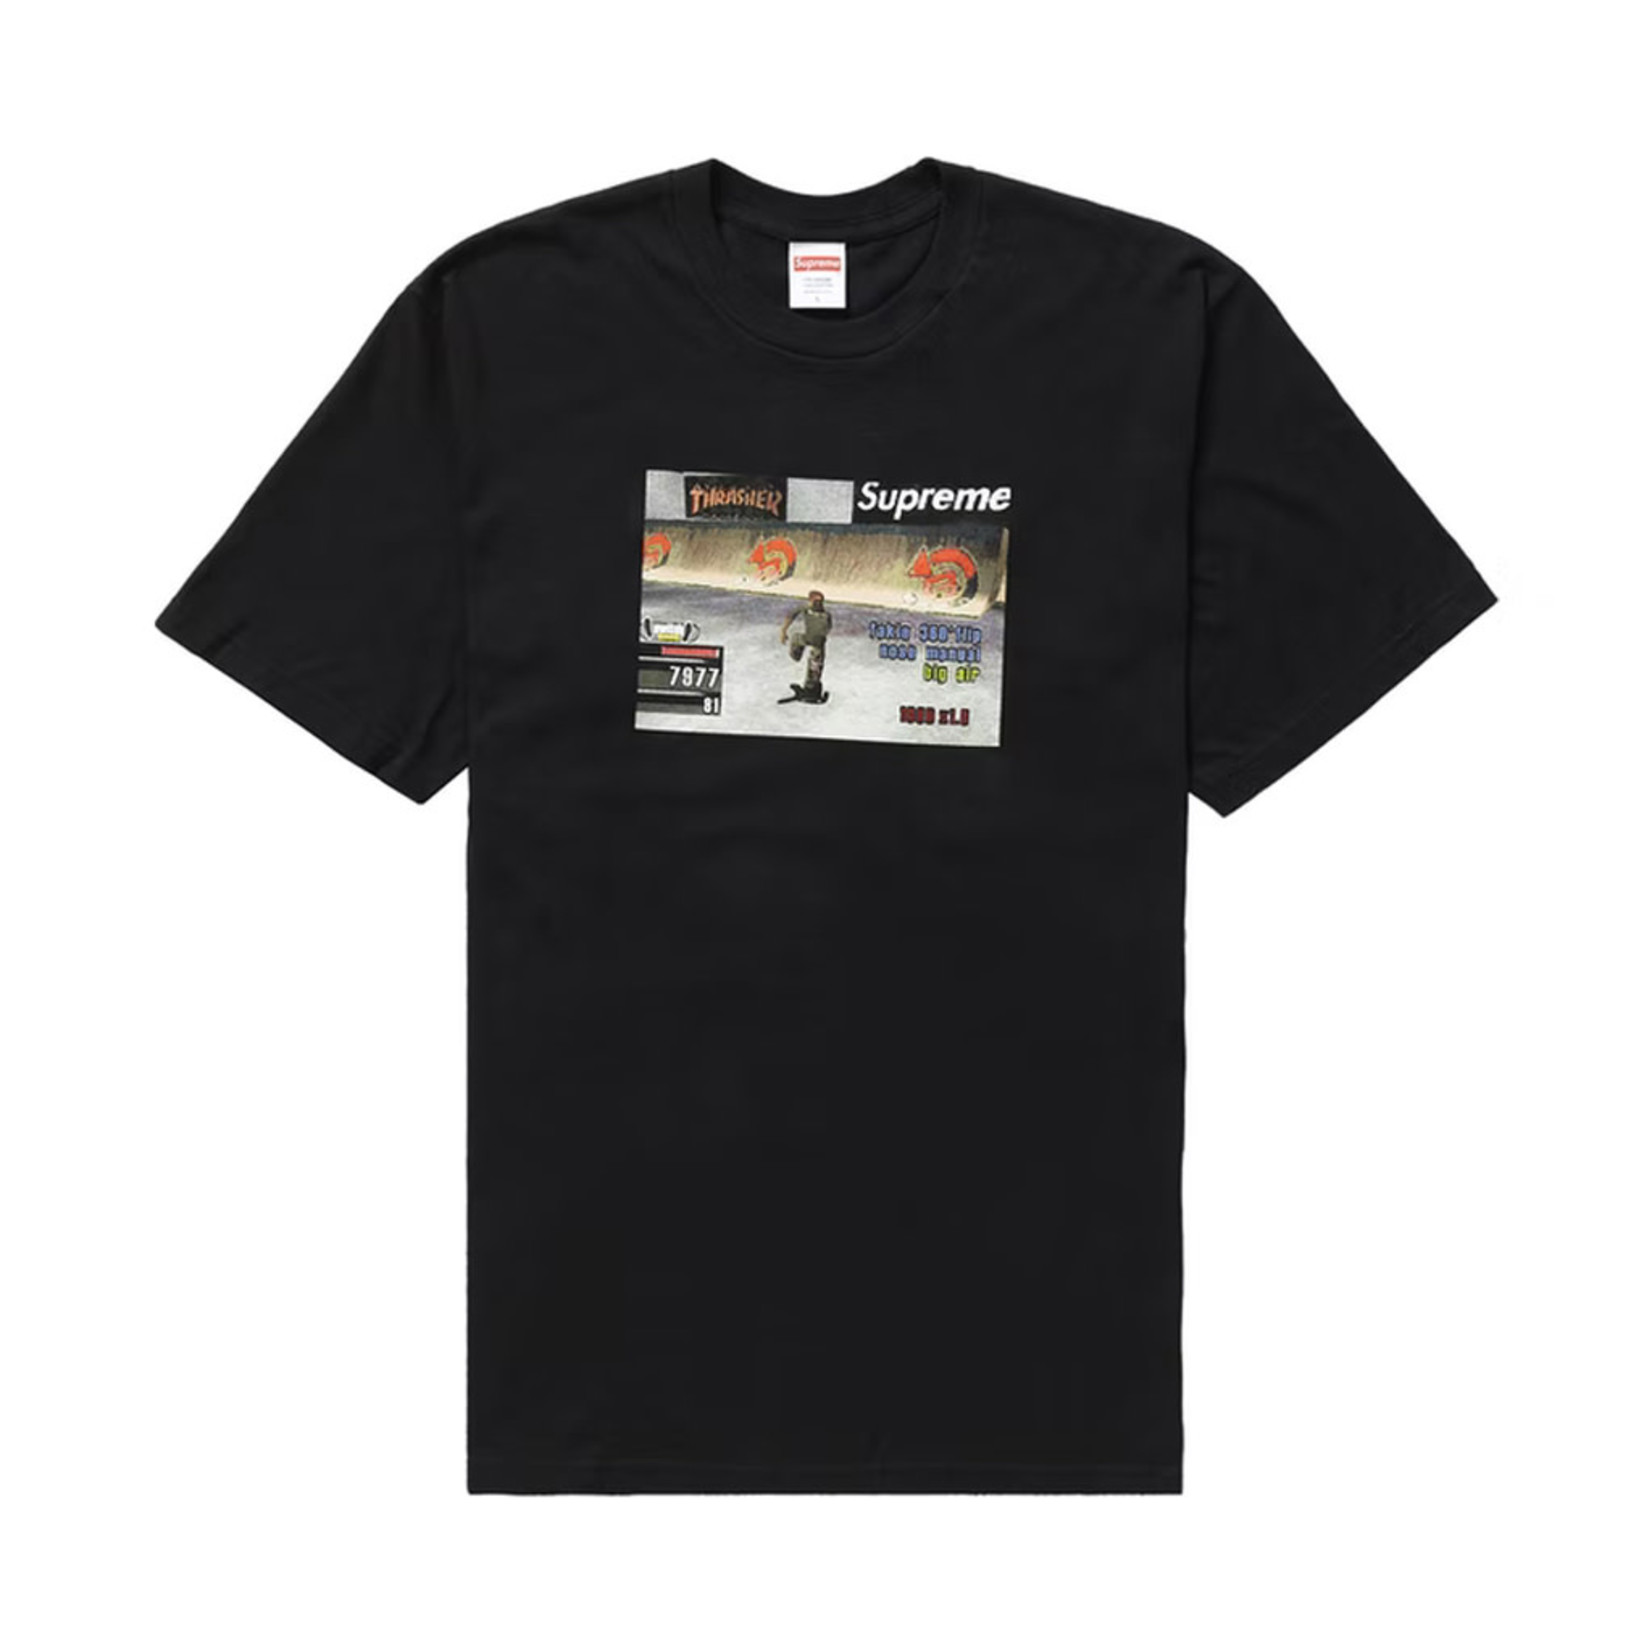 Supreme Supreme Thrasher Game T-Shirt Black (L)